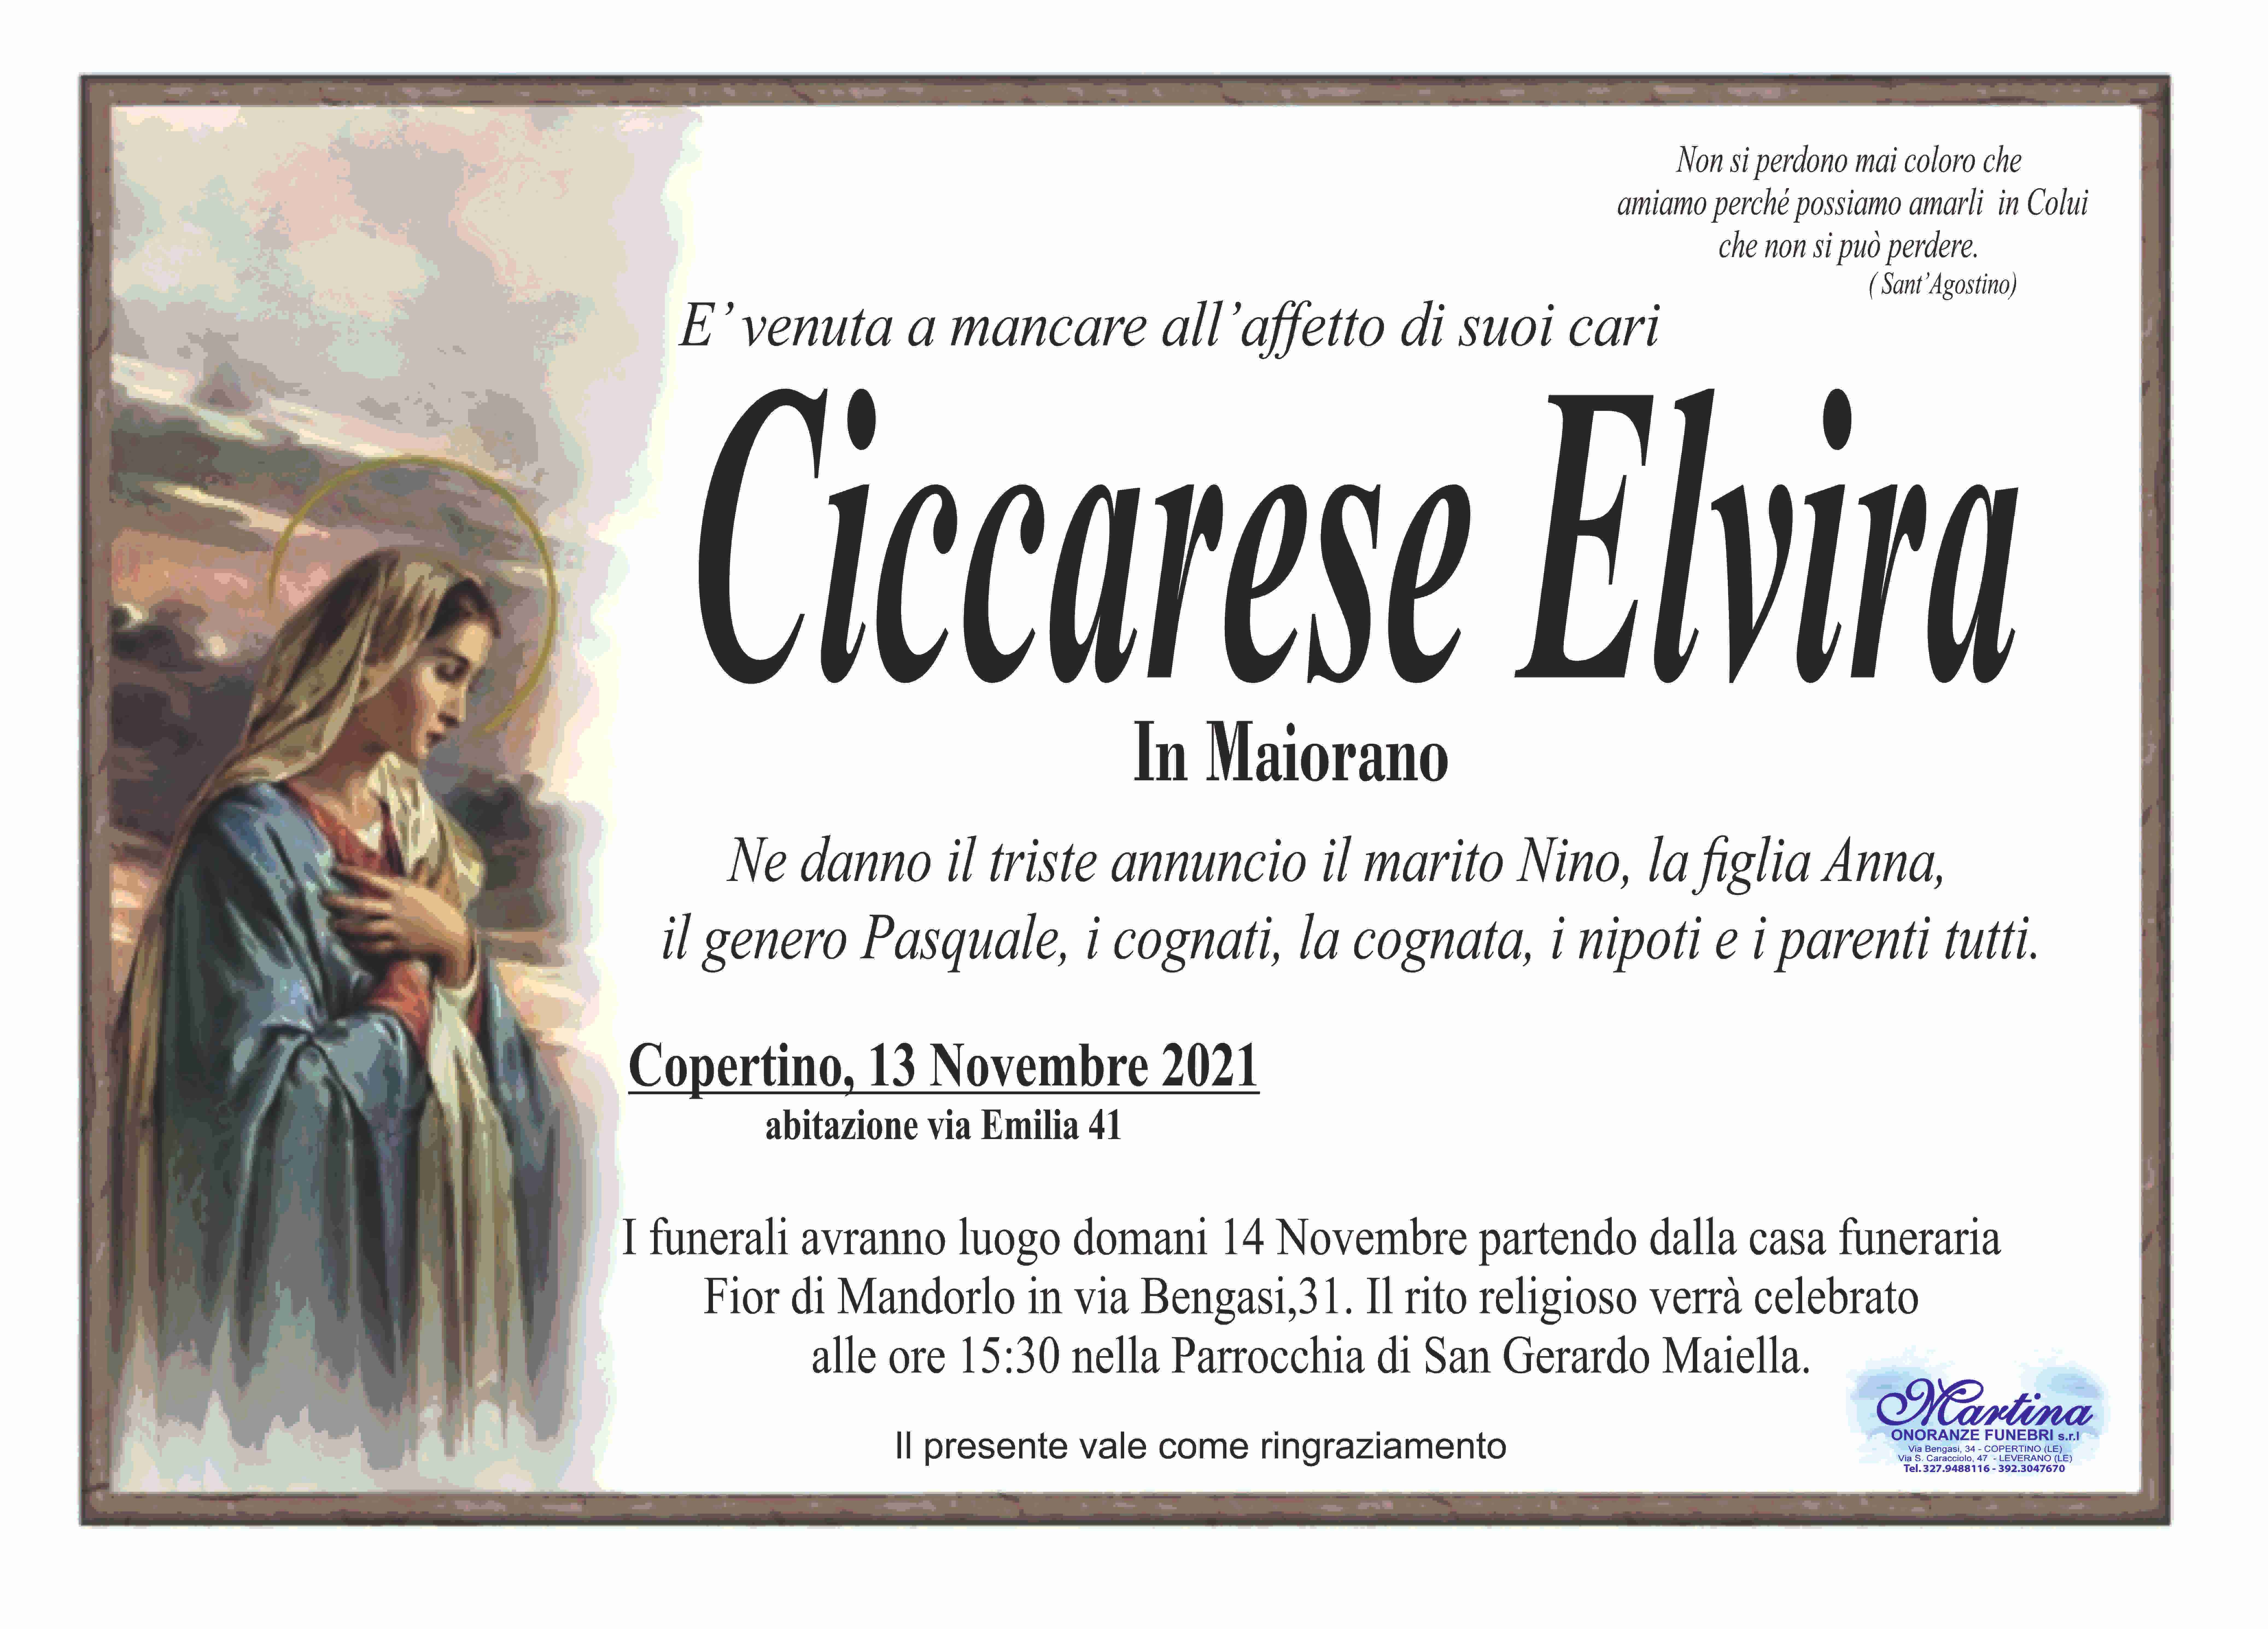 Elvira Ciccarese